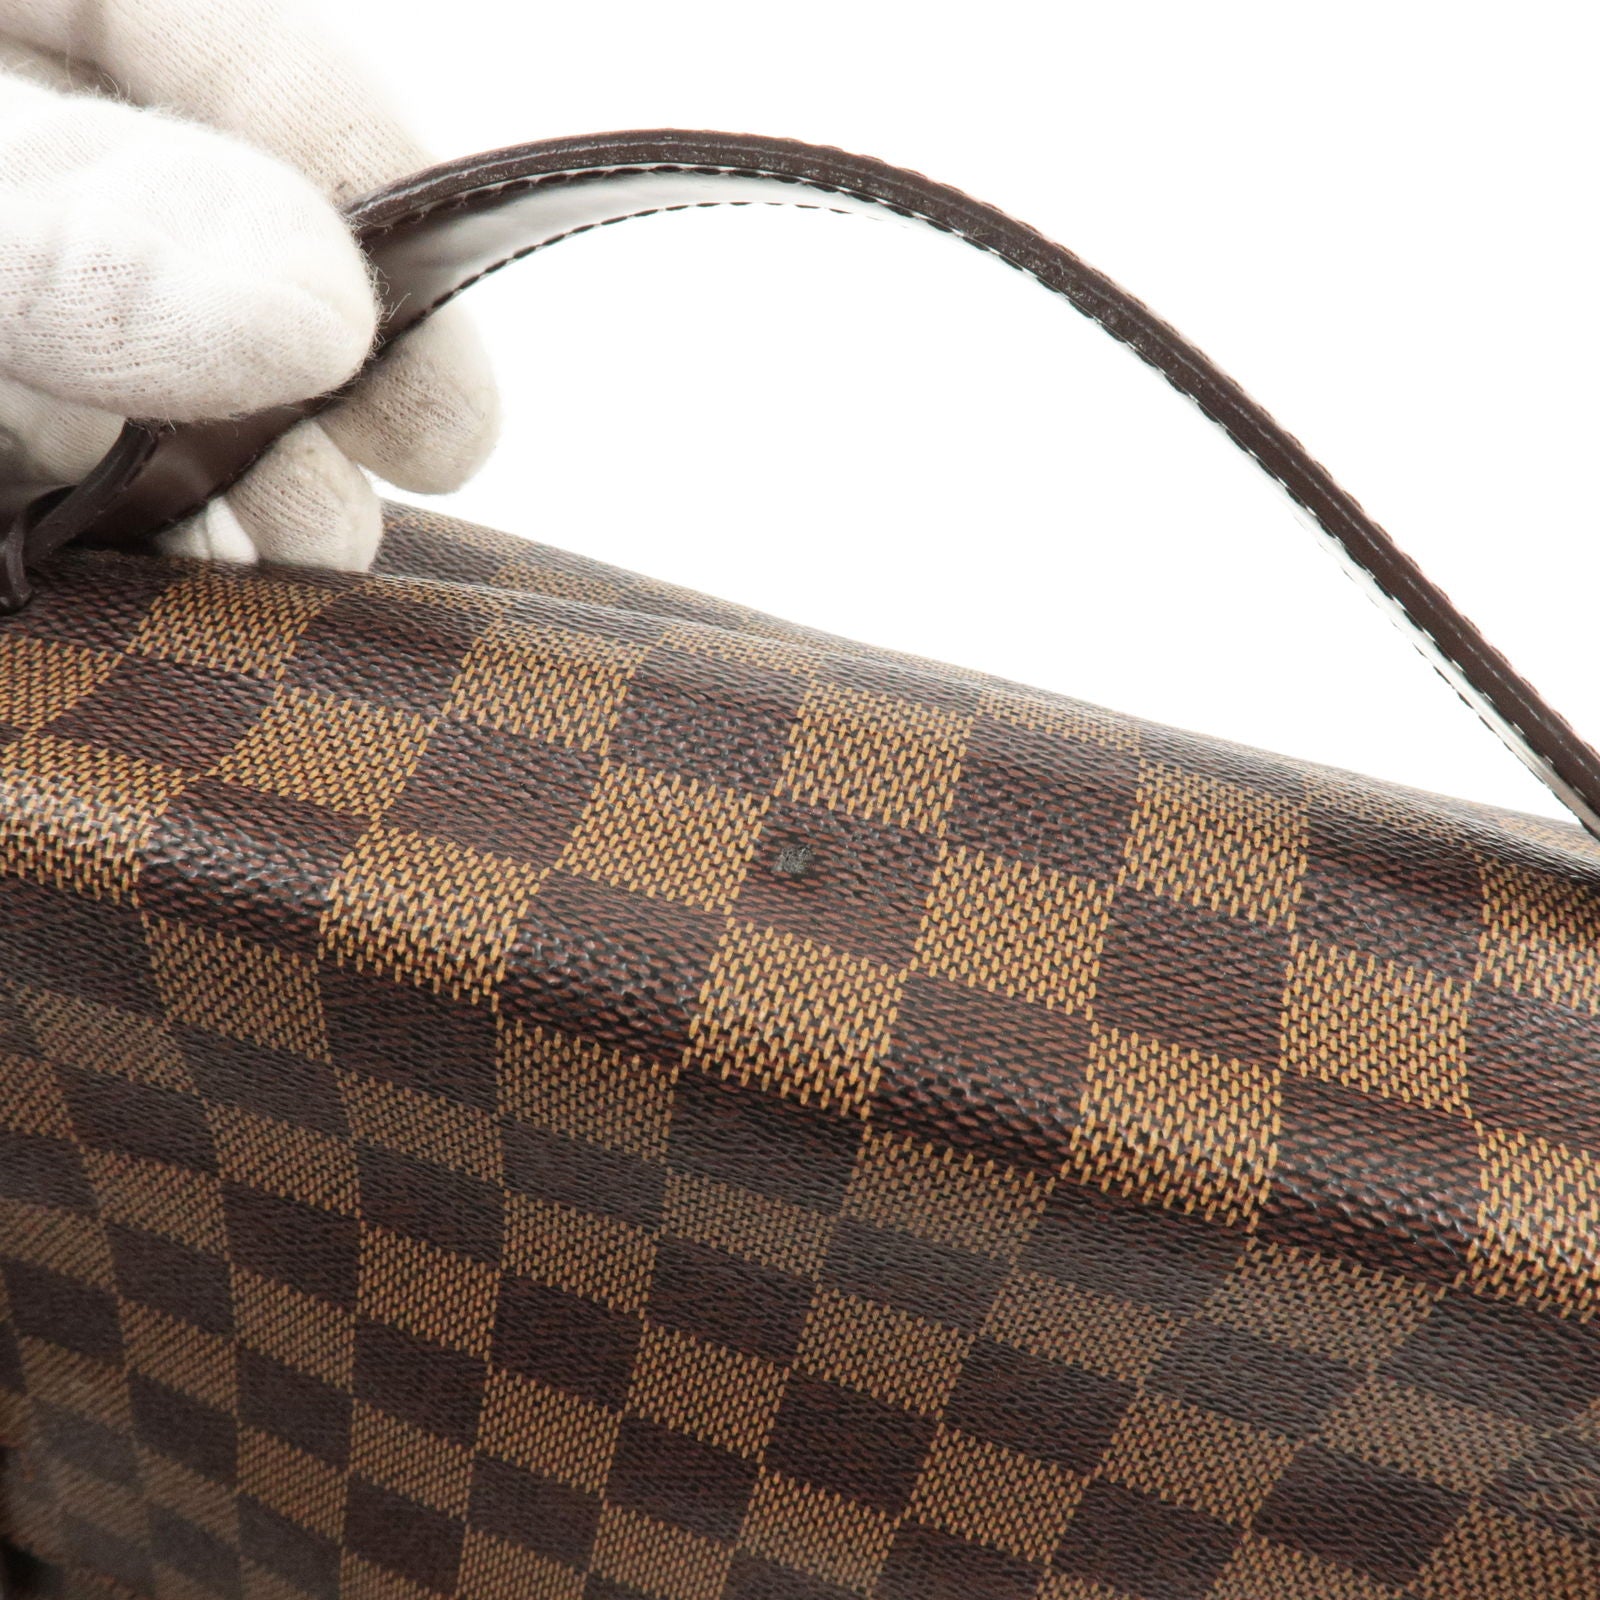 Louis Vuitton Bisten 50 Monogram Suitcase